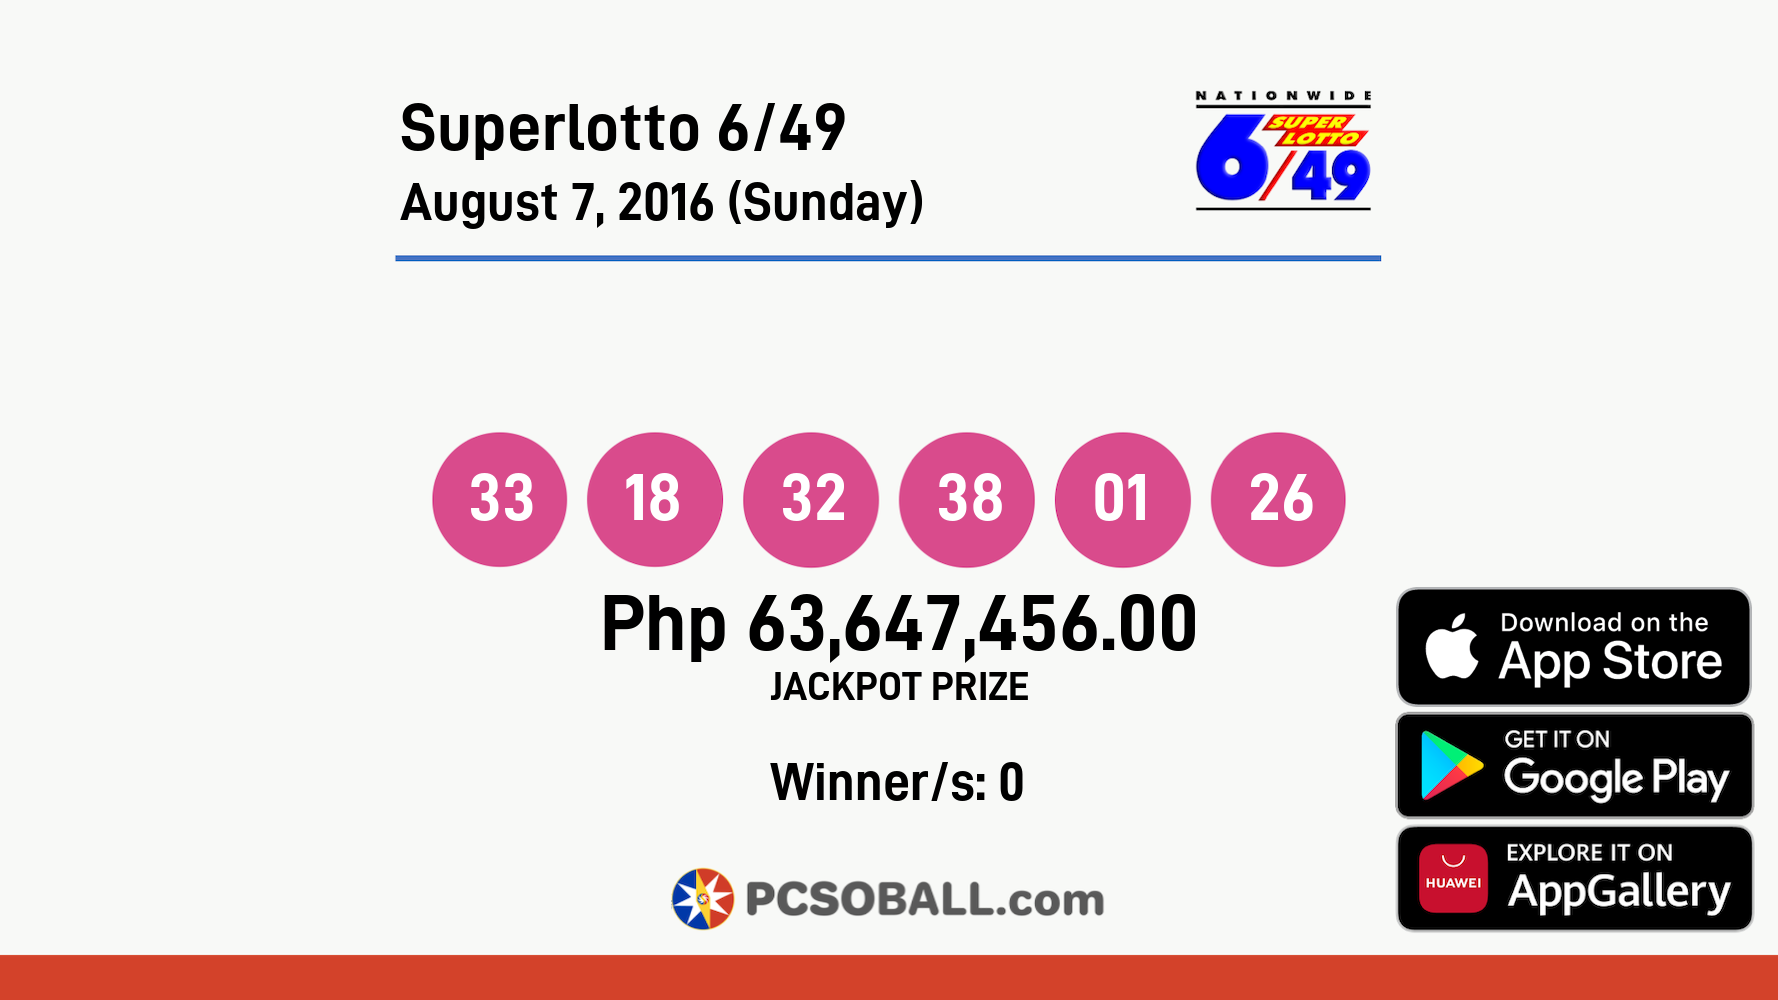 Superlotto 6/49 August 7, 2016 (Sunday) Result